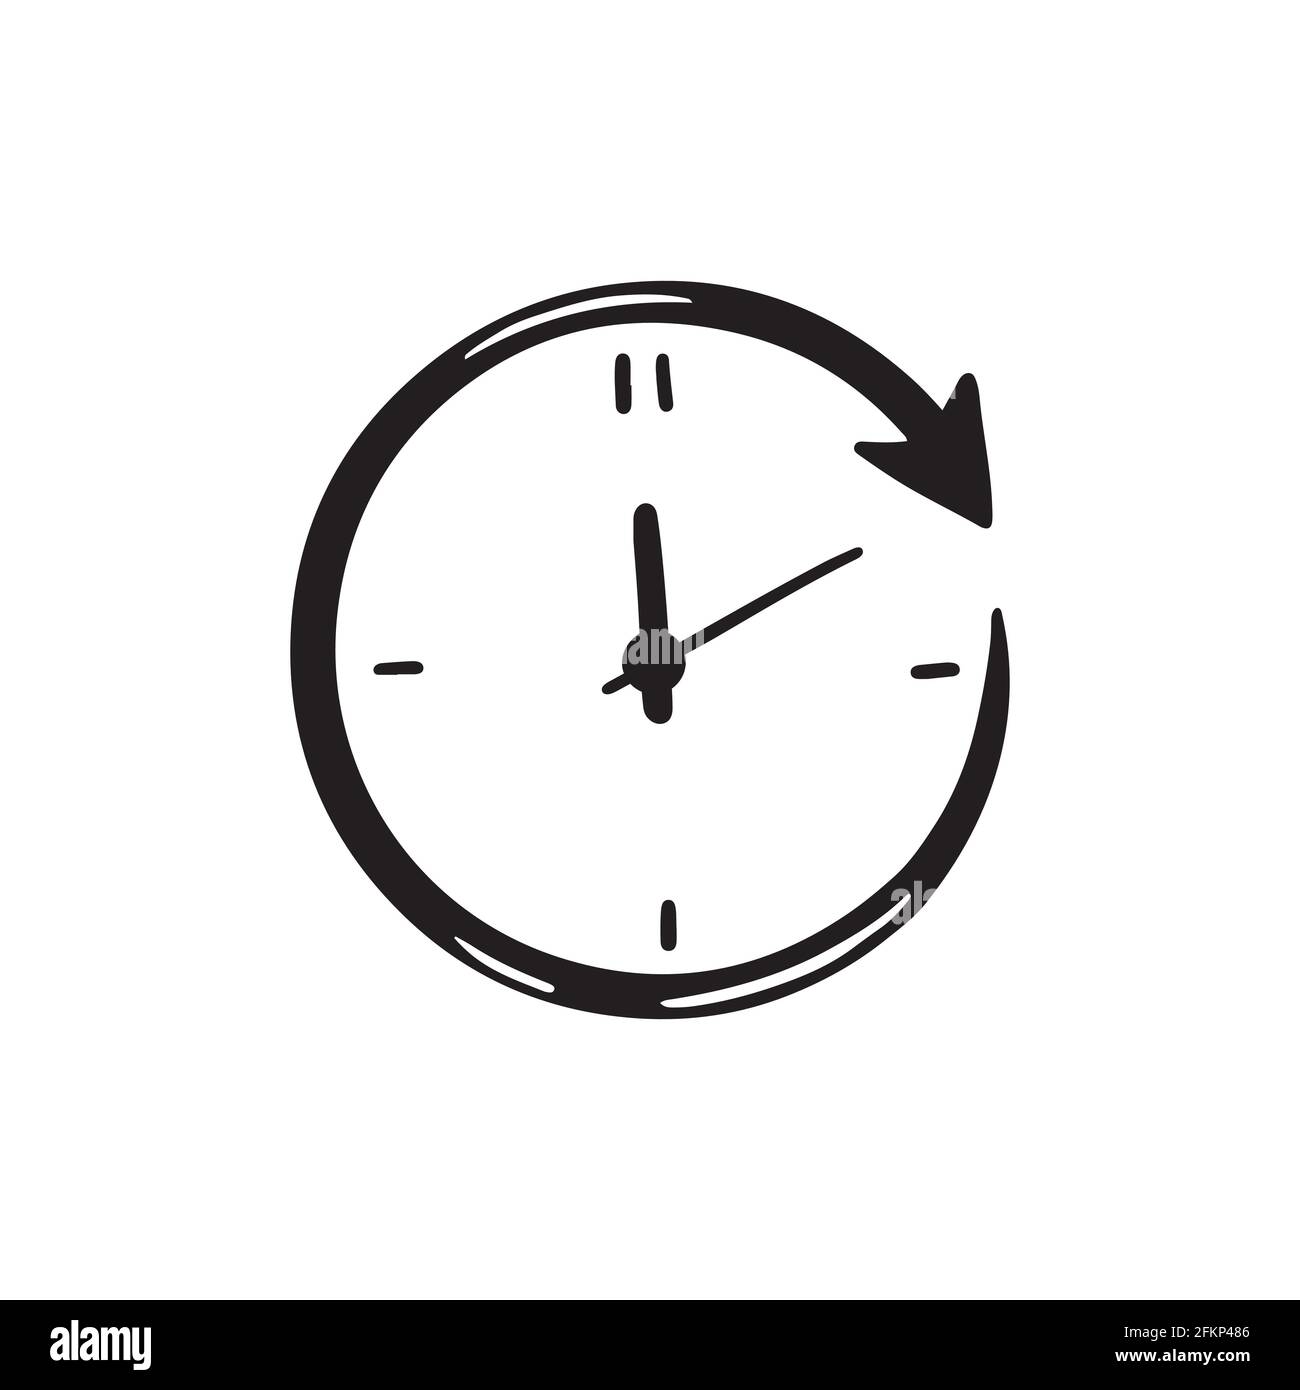 Handgezeichneter einfacher Kreis Uhr Symbol der schwarzen Farbe.  Doodle-Skizzenstil. Konzept von Zeit, Minute, Termin. Uhr mit Pfeil auf  weißem Hintergrund Stock-Vektorgrafik - Alamy